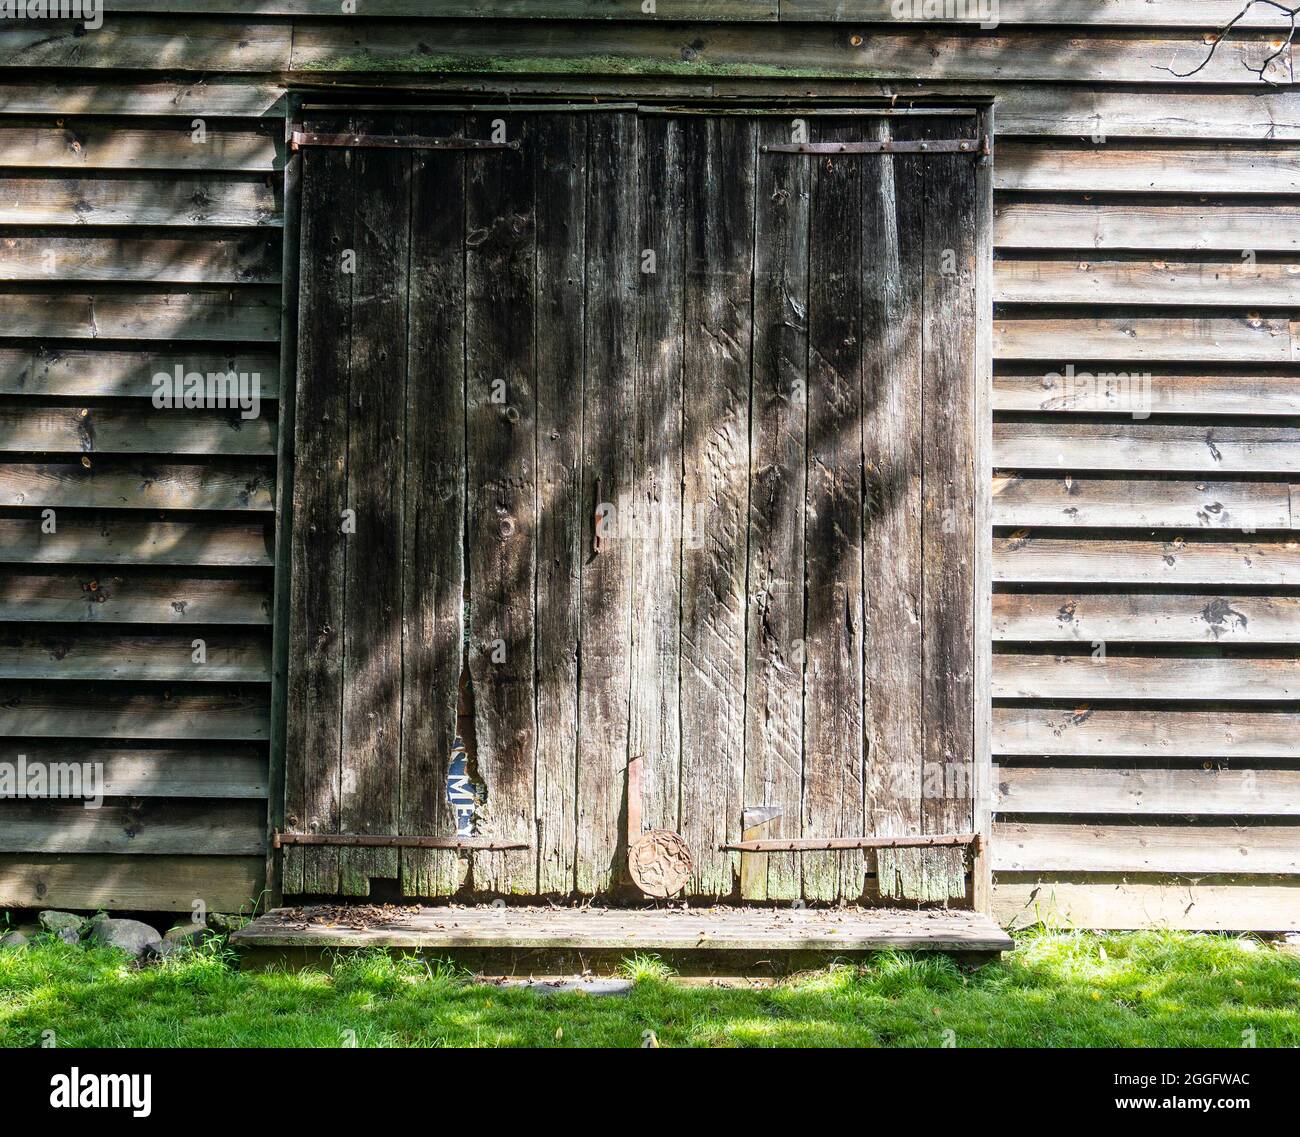 An old barn door at the Hopper Goetschius Museum in New Jersey Stock Photo